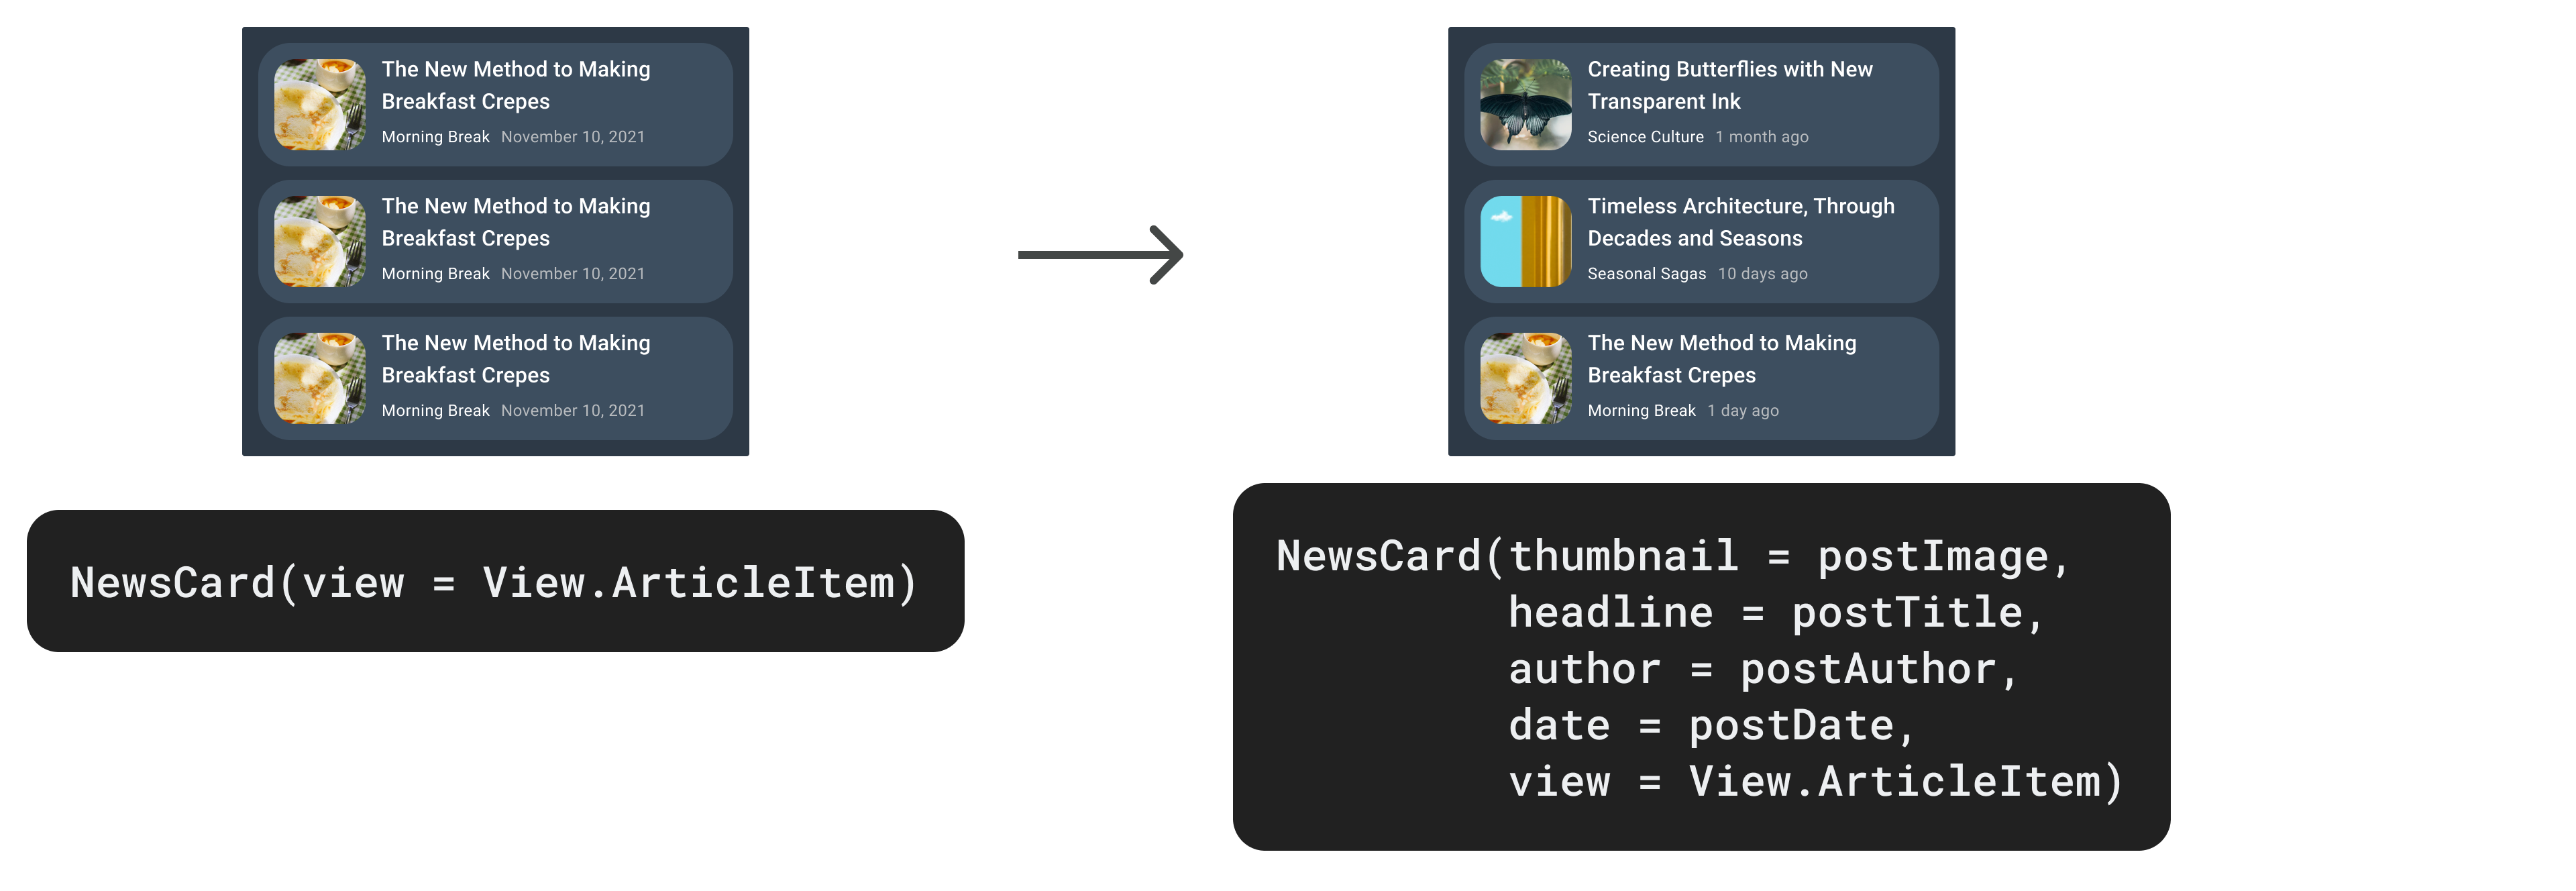 Cómo actualizar NewsCard con más parámetros